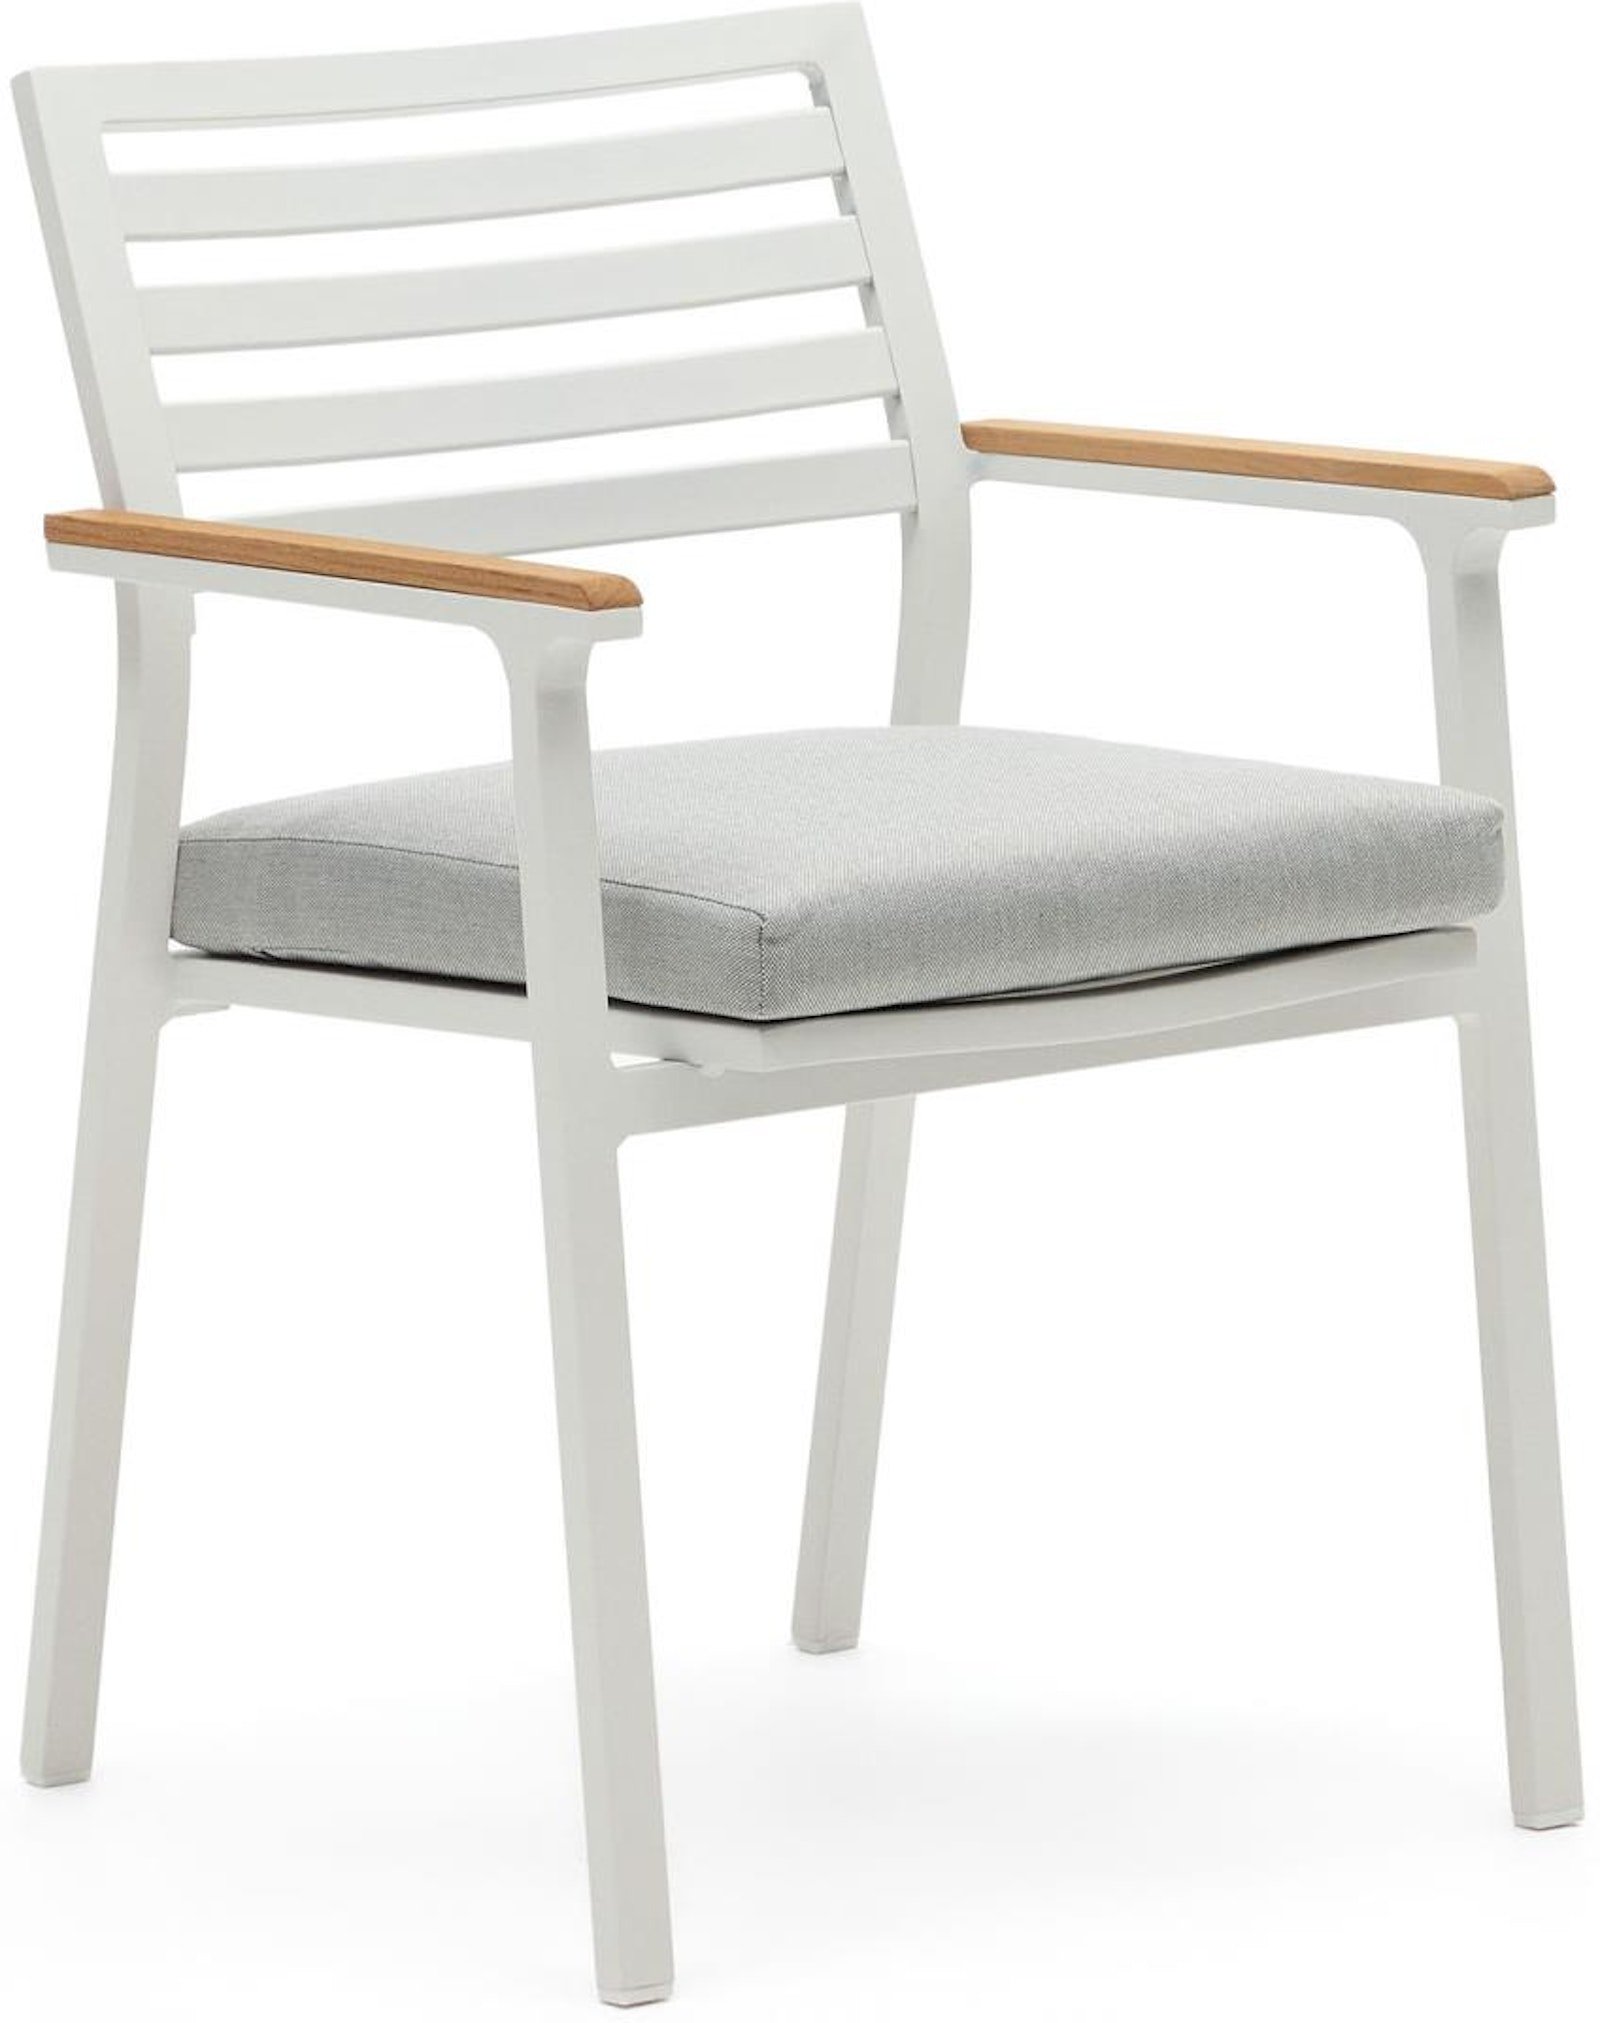 #1 - Bona, Udendørs stol, nordisk, moderne, metal by Laforma (H: 83 cm. x B: 57 cm. x L: 55 cm., Hvid/Natur)